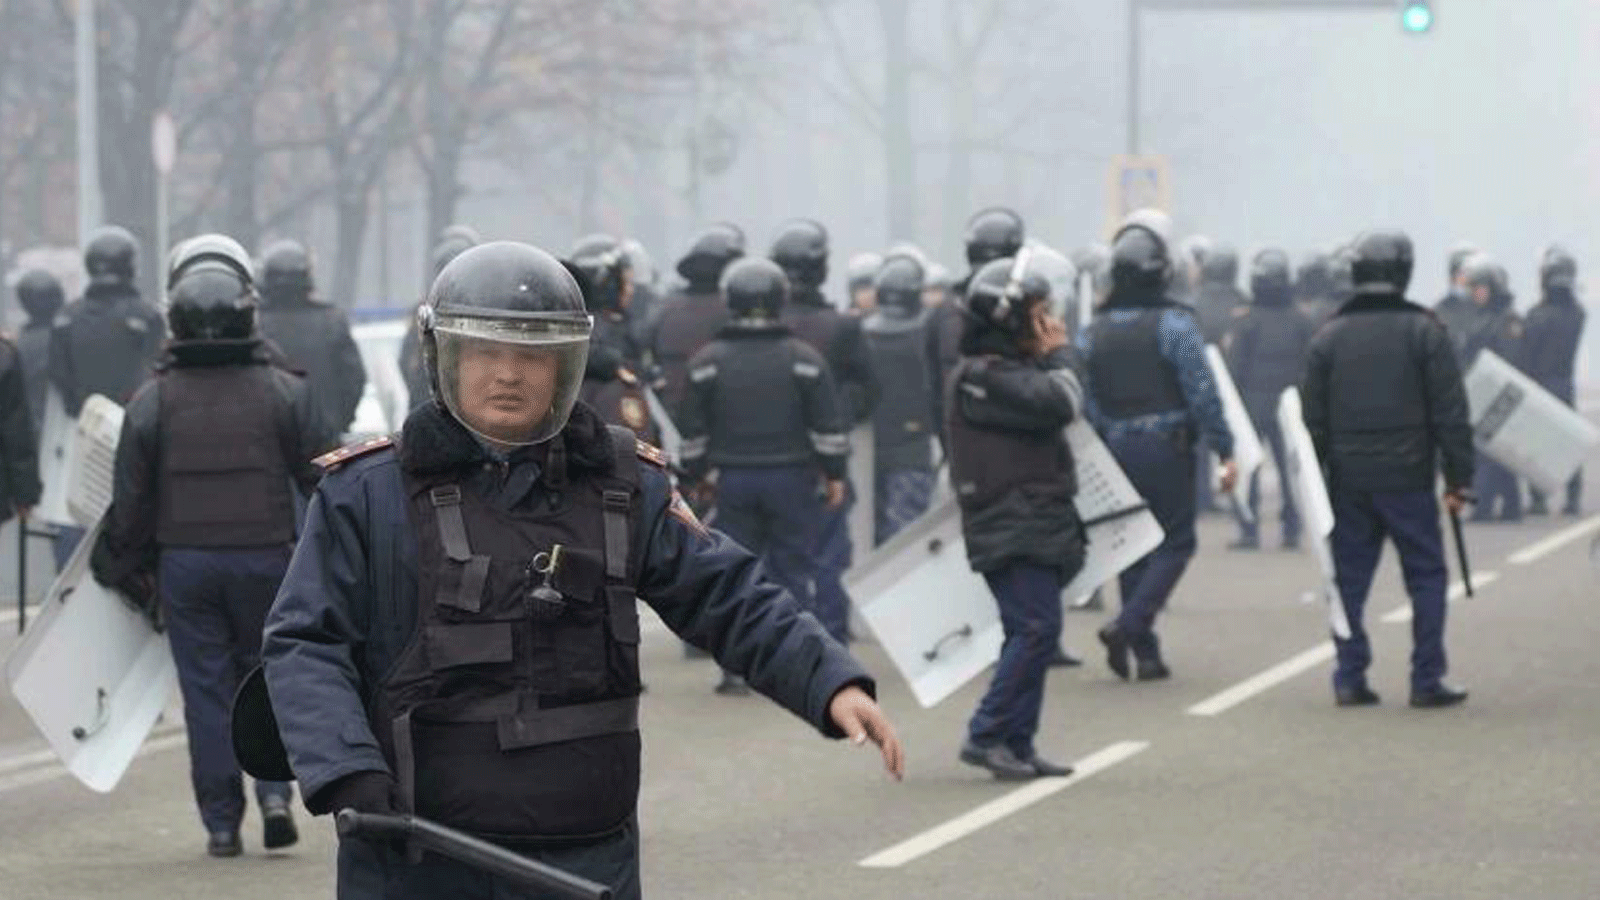 الشرطة تُطلِق قنابل الصوت والغاز المسيل للدموع على حشد من عدة آلاف من المتظاهرين في ألماتي.